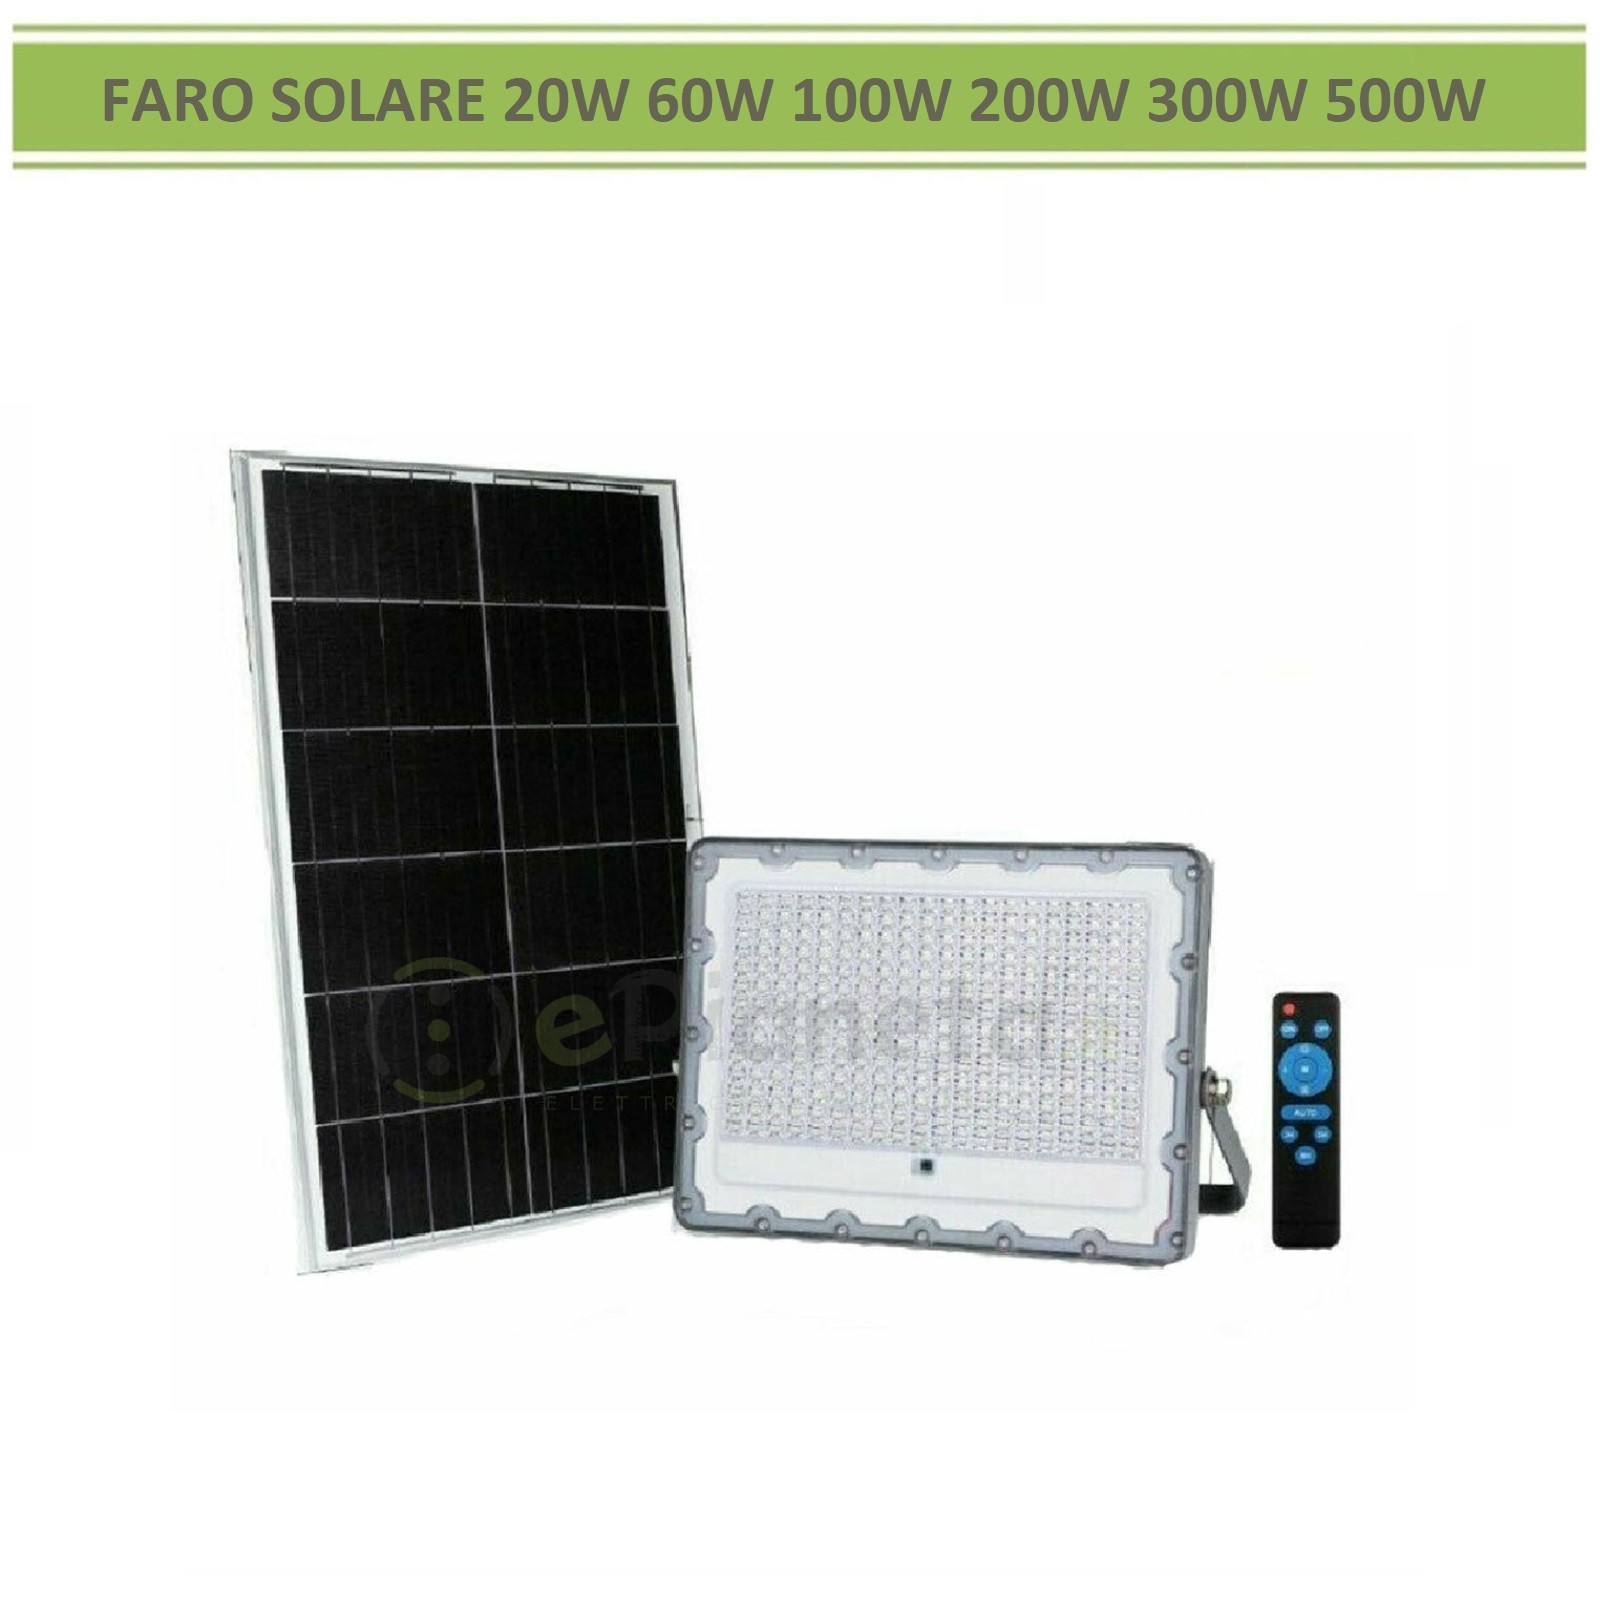 Faro proiettore led solare con telecomando e pannello per esterno